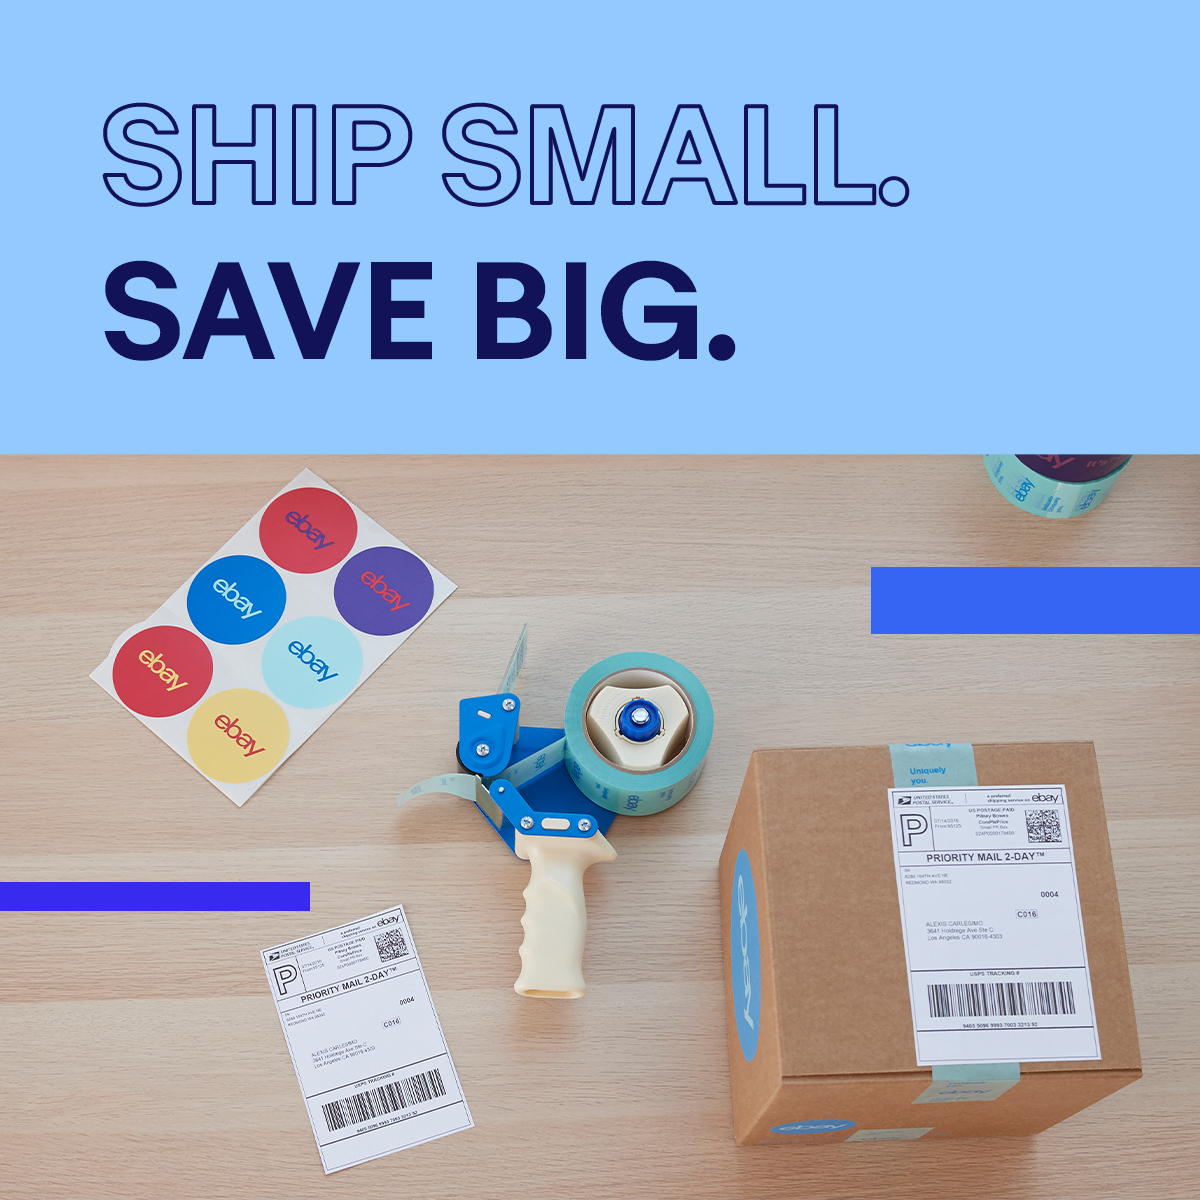 Ship small, shop big